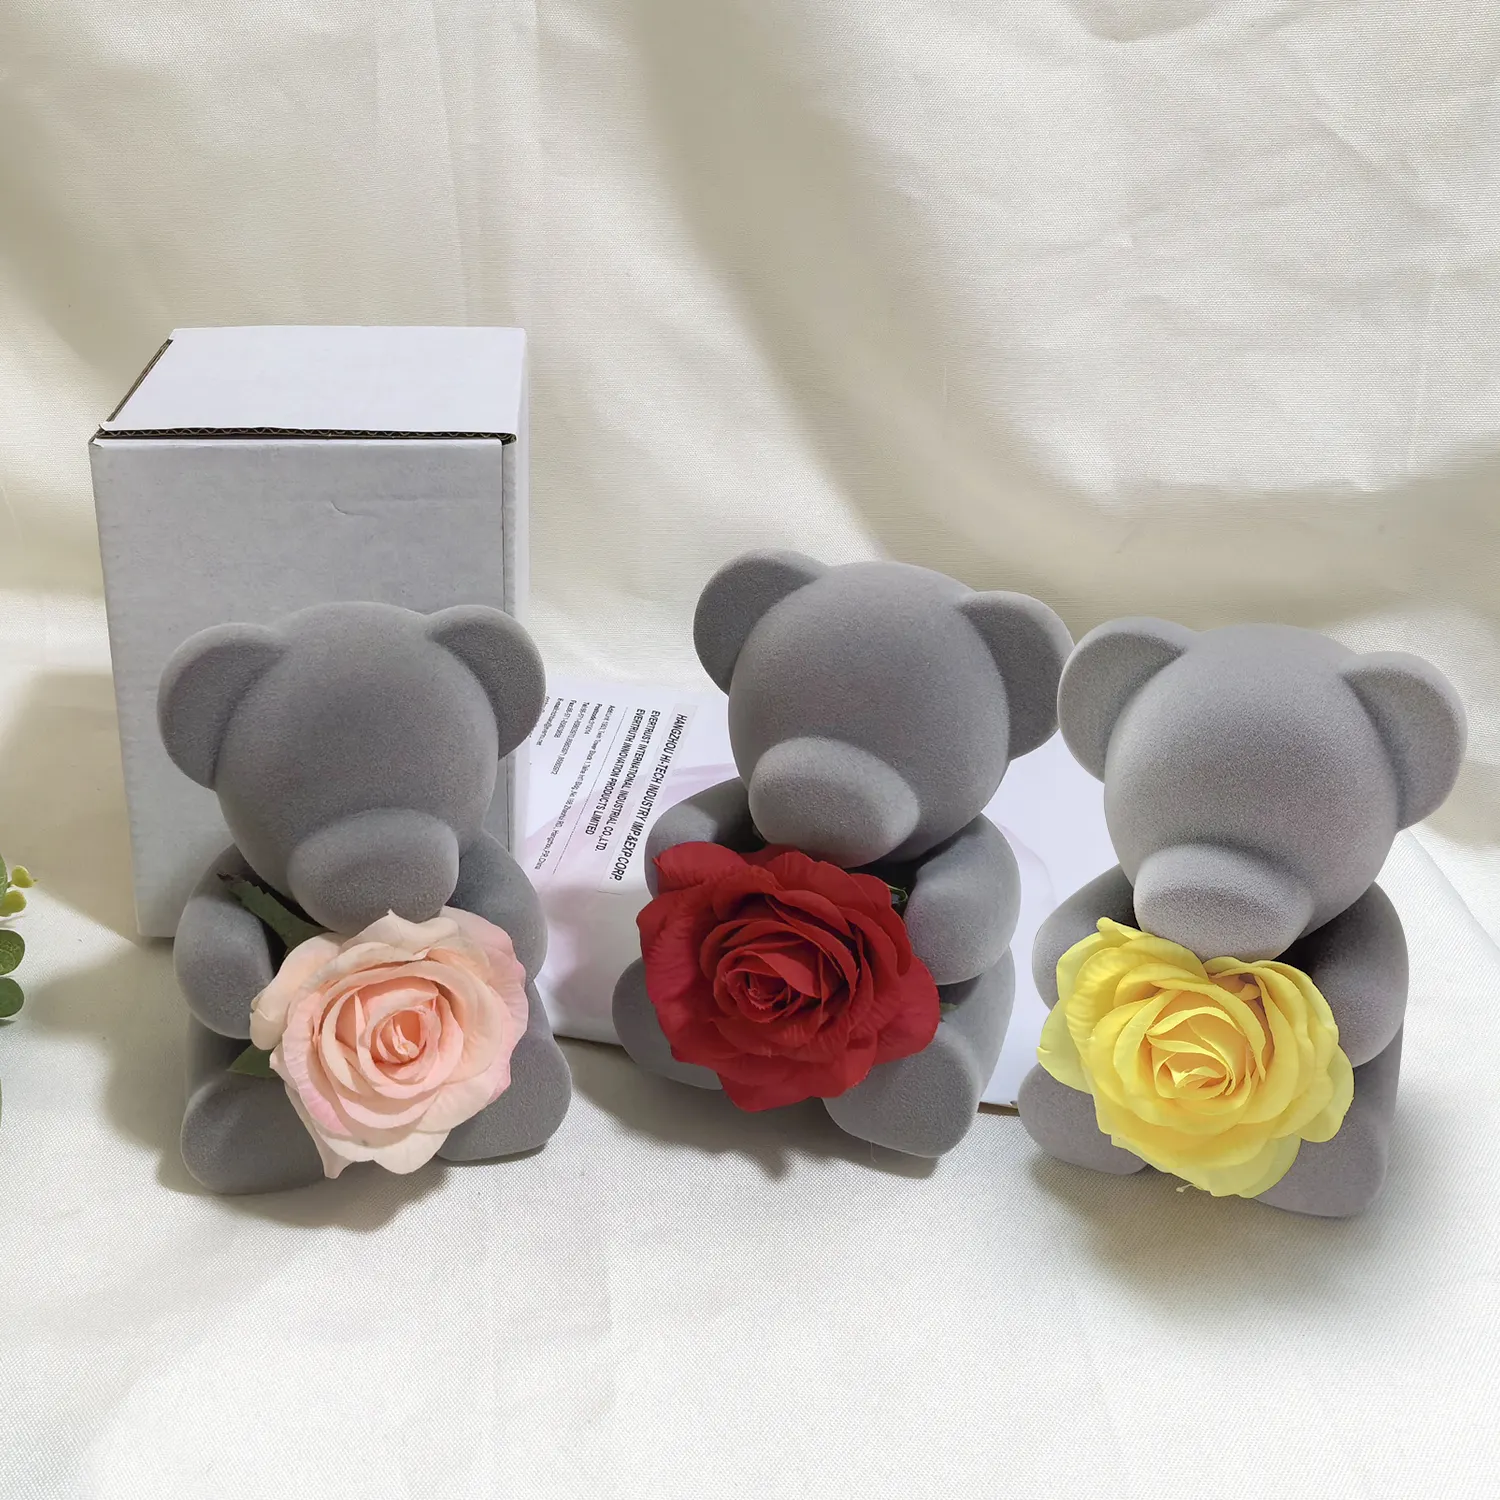 מתנה ליום האם נוהרת בובת דוב משומר סבון מלאכותי ורד מתנות פרחים לנשים אמא